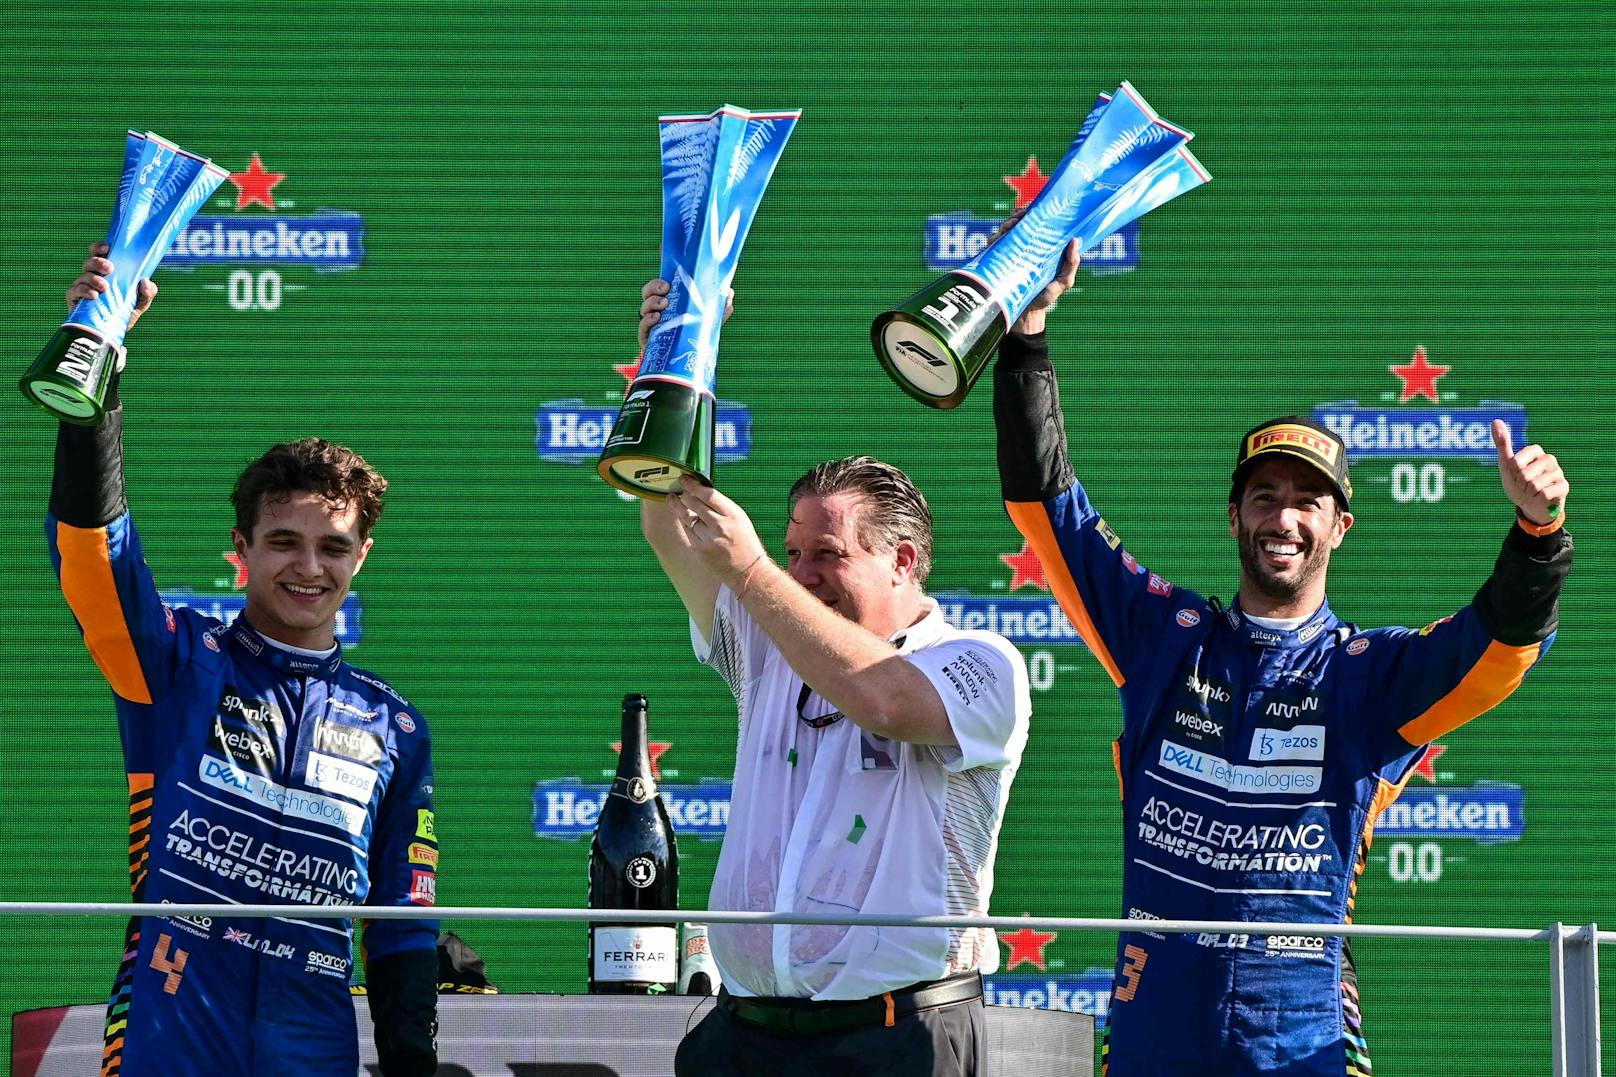 McLaren ist zurück an der Spitze! Daniel Ricciardo gewinnt den GP von Italien vor seinem Teamkollegen Lando Norris.